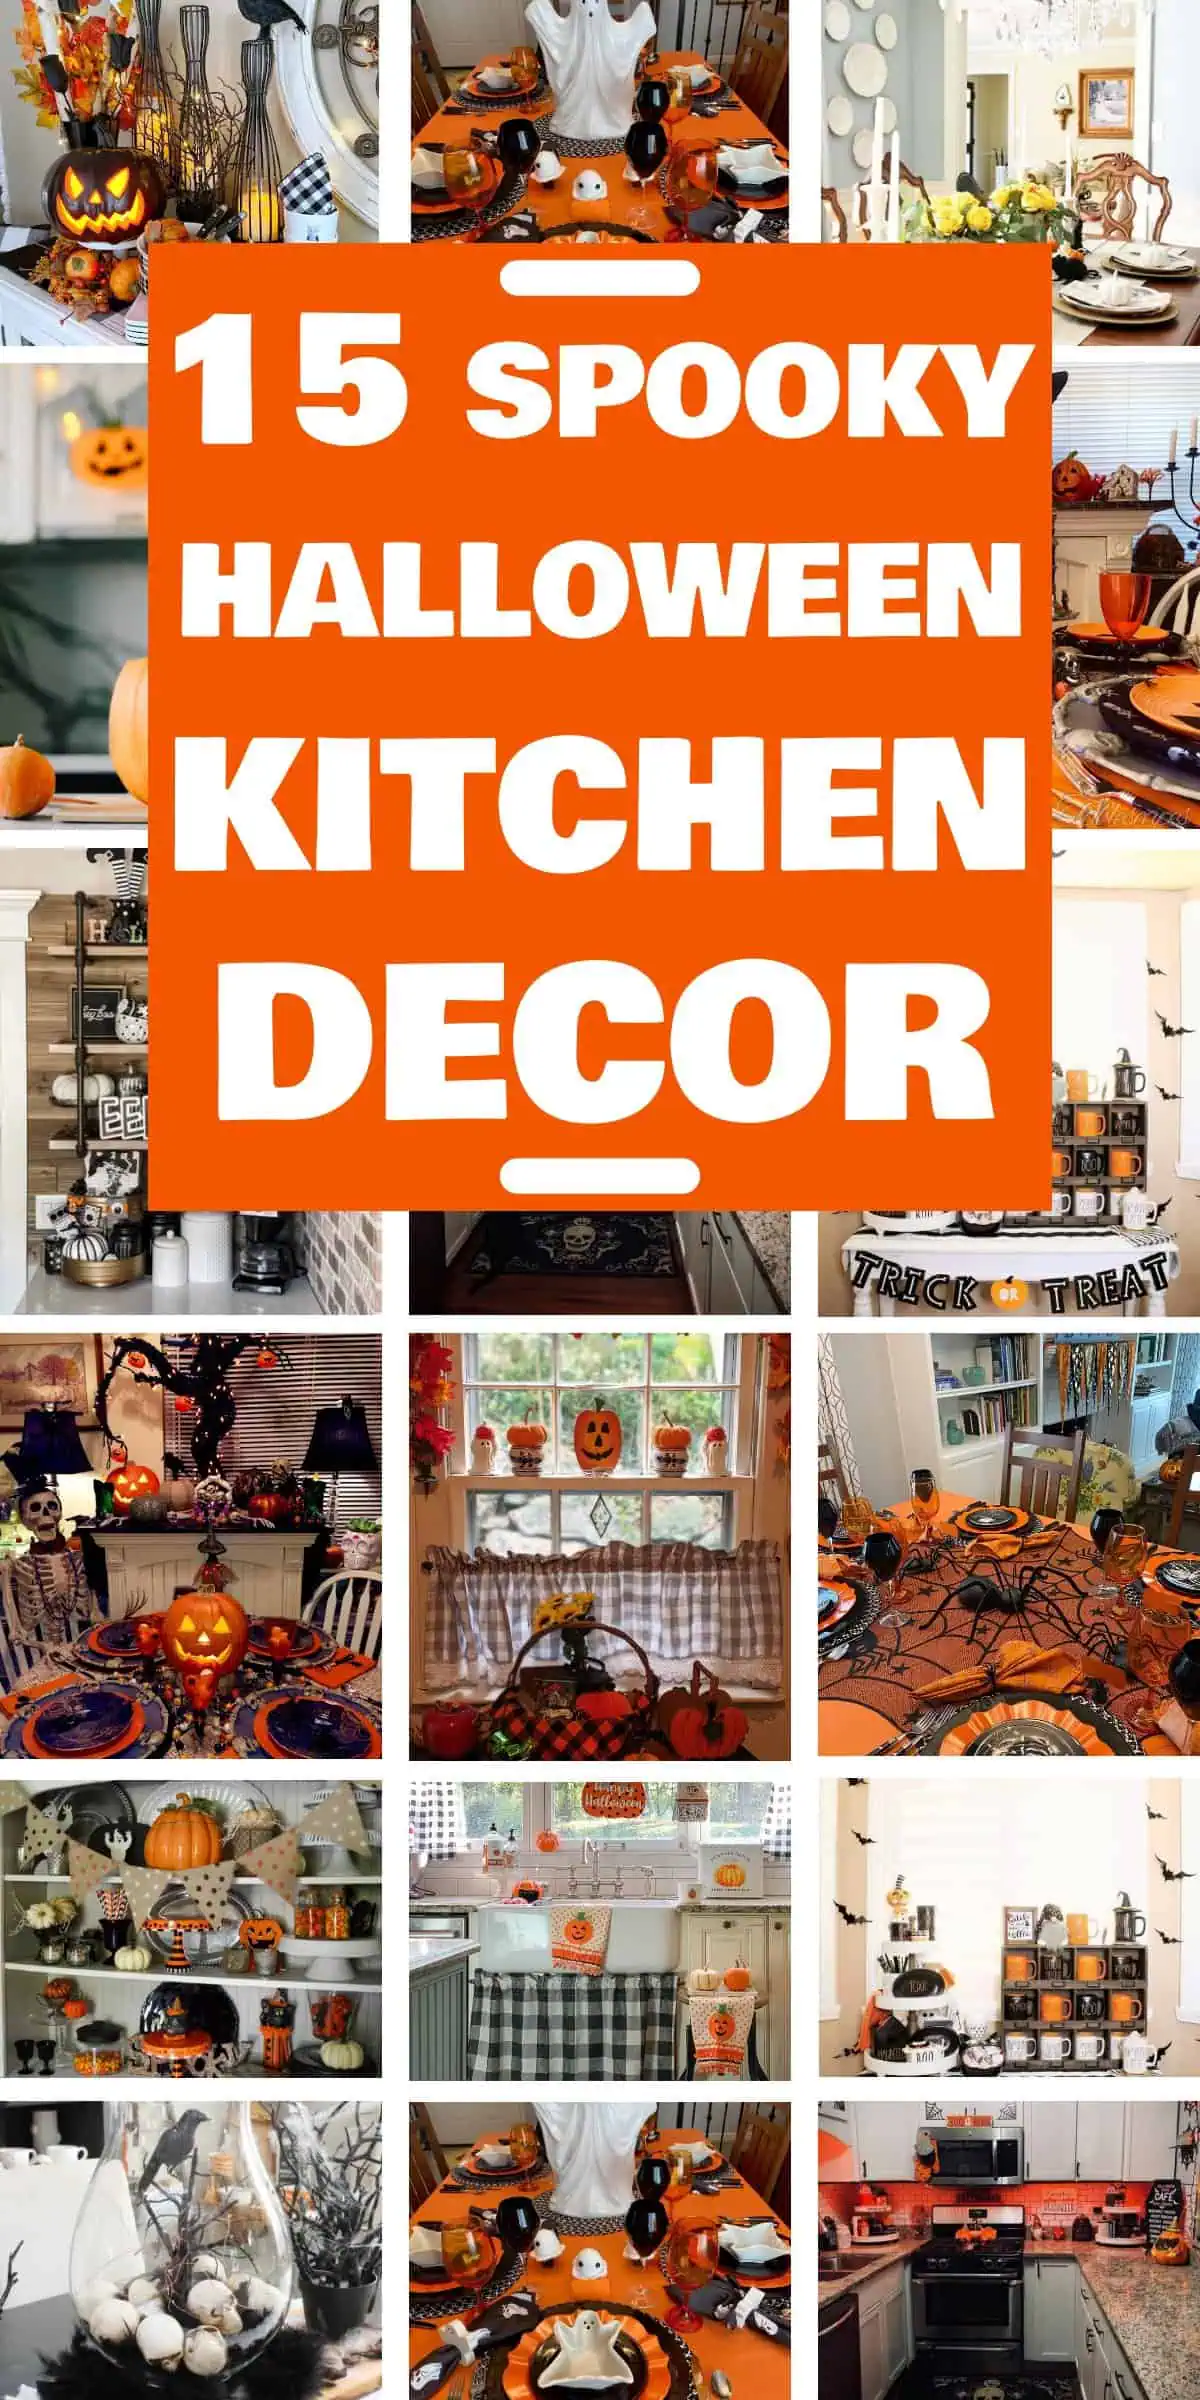 15 Spooky Halloween Kitchen Decor Ideas